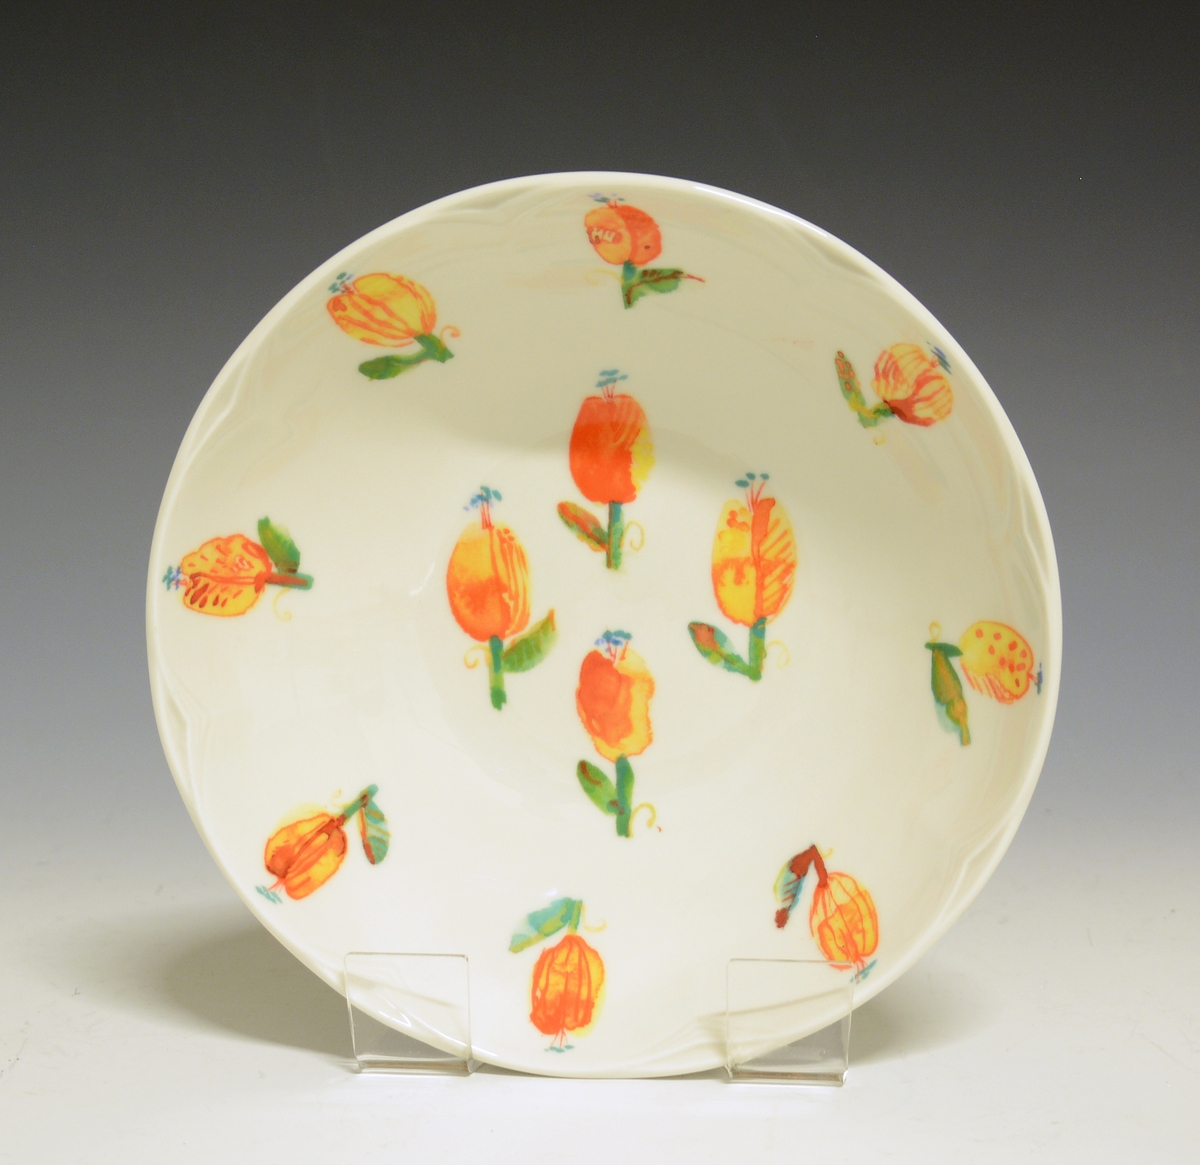 Liten bolle av porselen med hvit glasur. Dekorert med oransje blomster.
Modell: 2700 Fiore av Eeva Terävä
Dekor: Spring av Victoria Berge